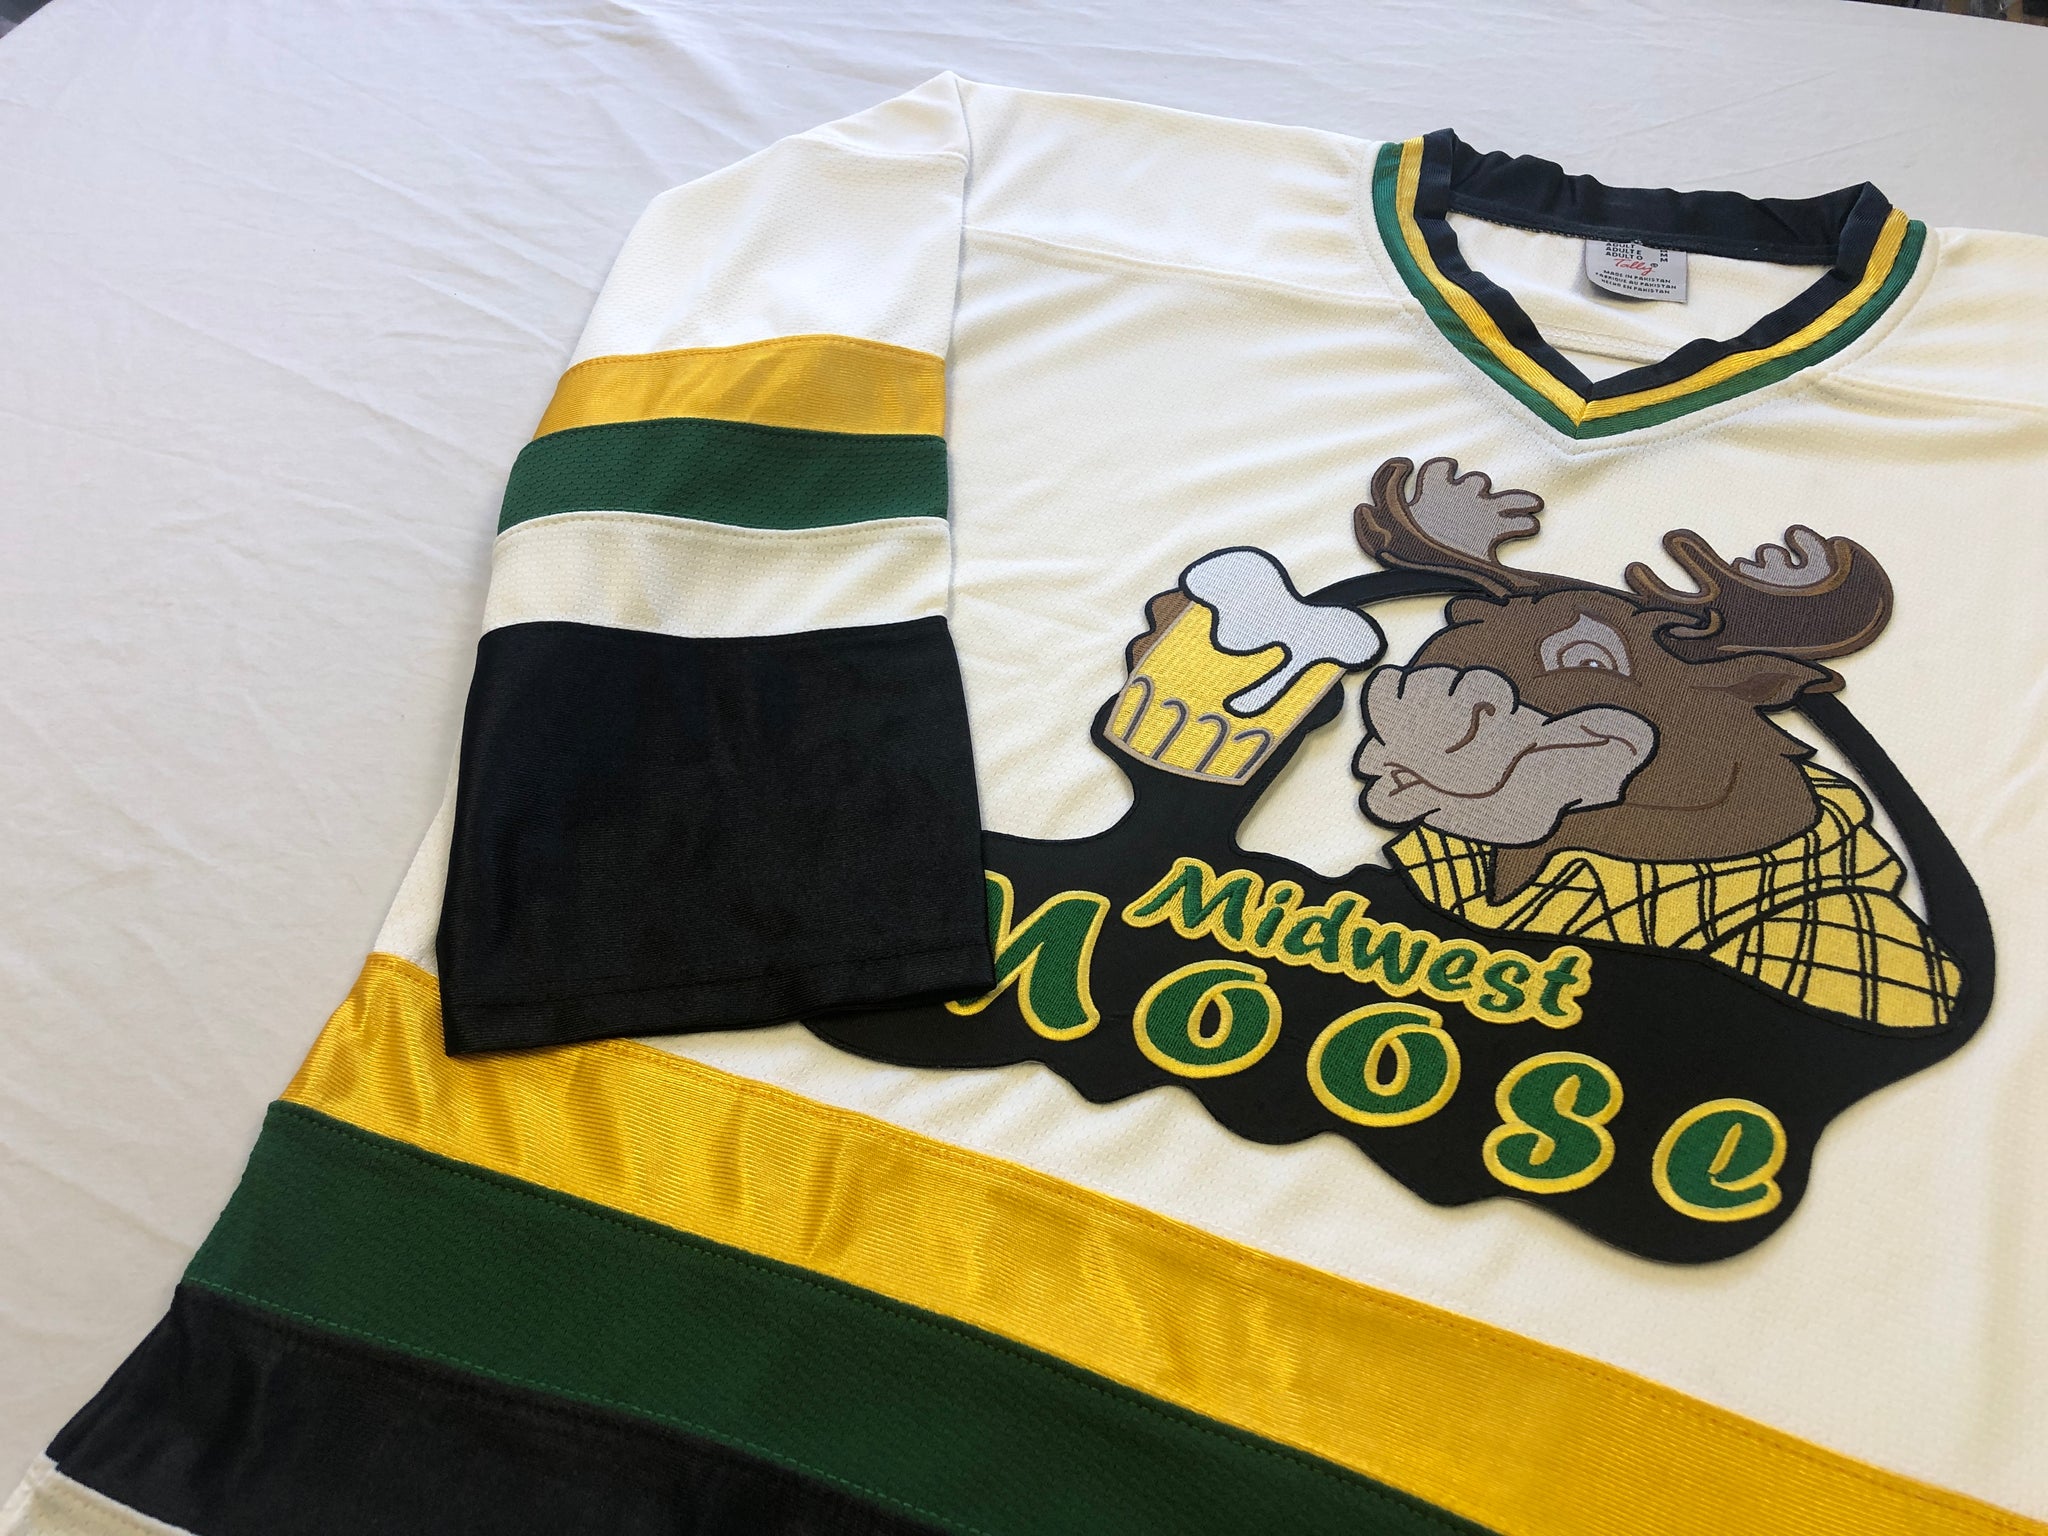 Manitoba Moose – Customize Sports